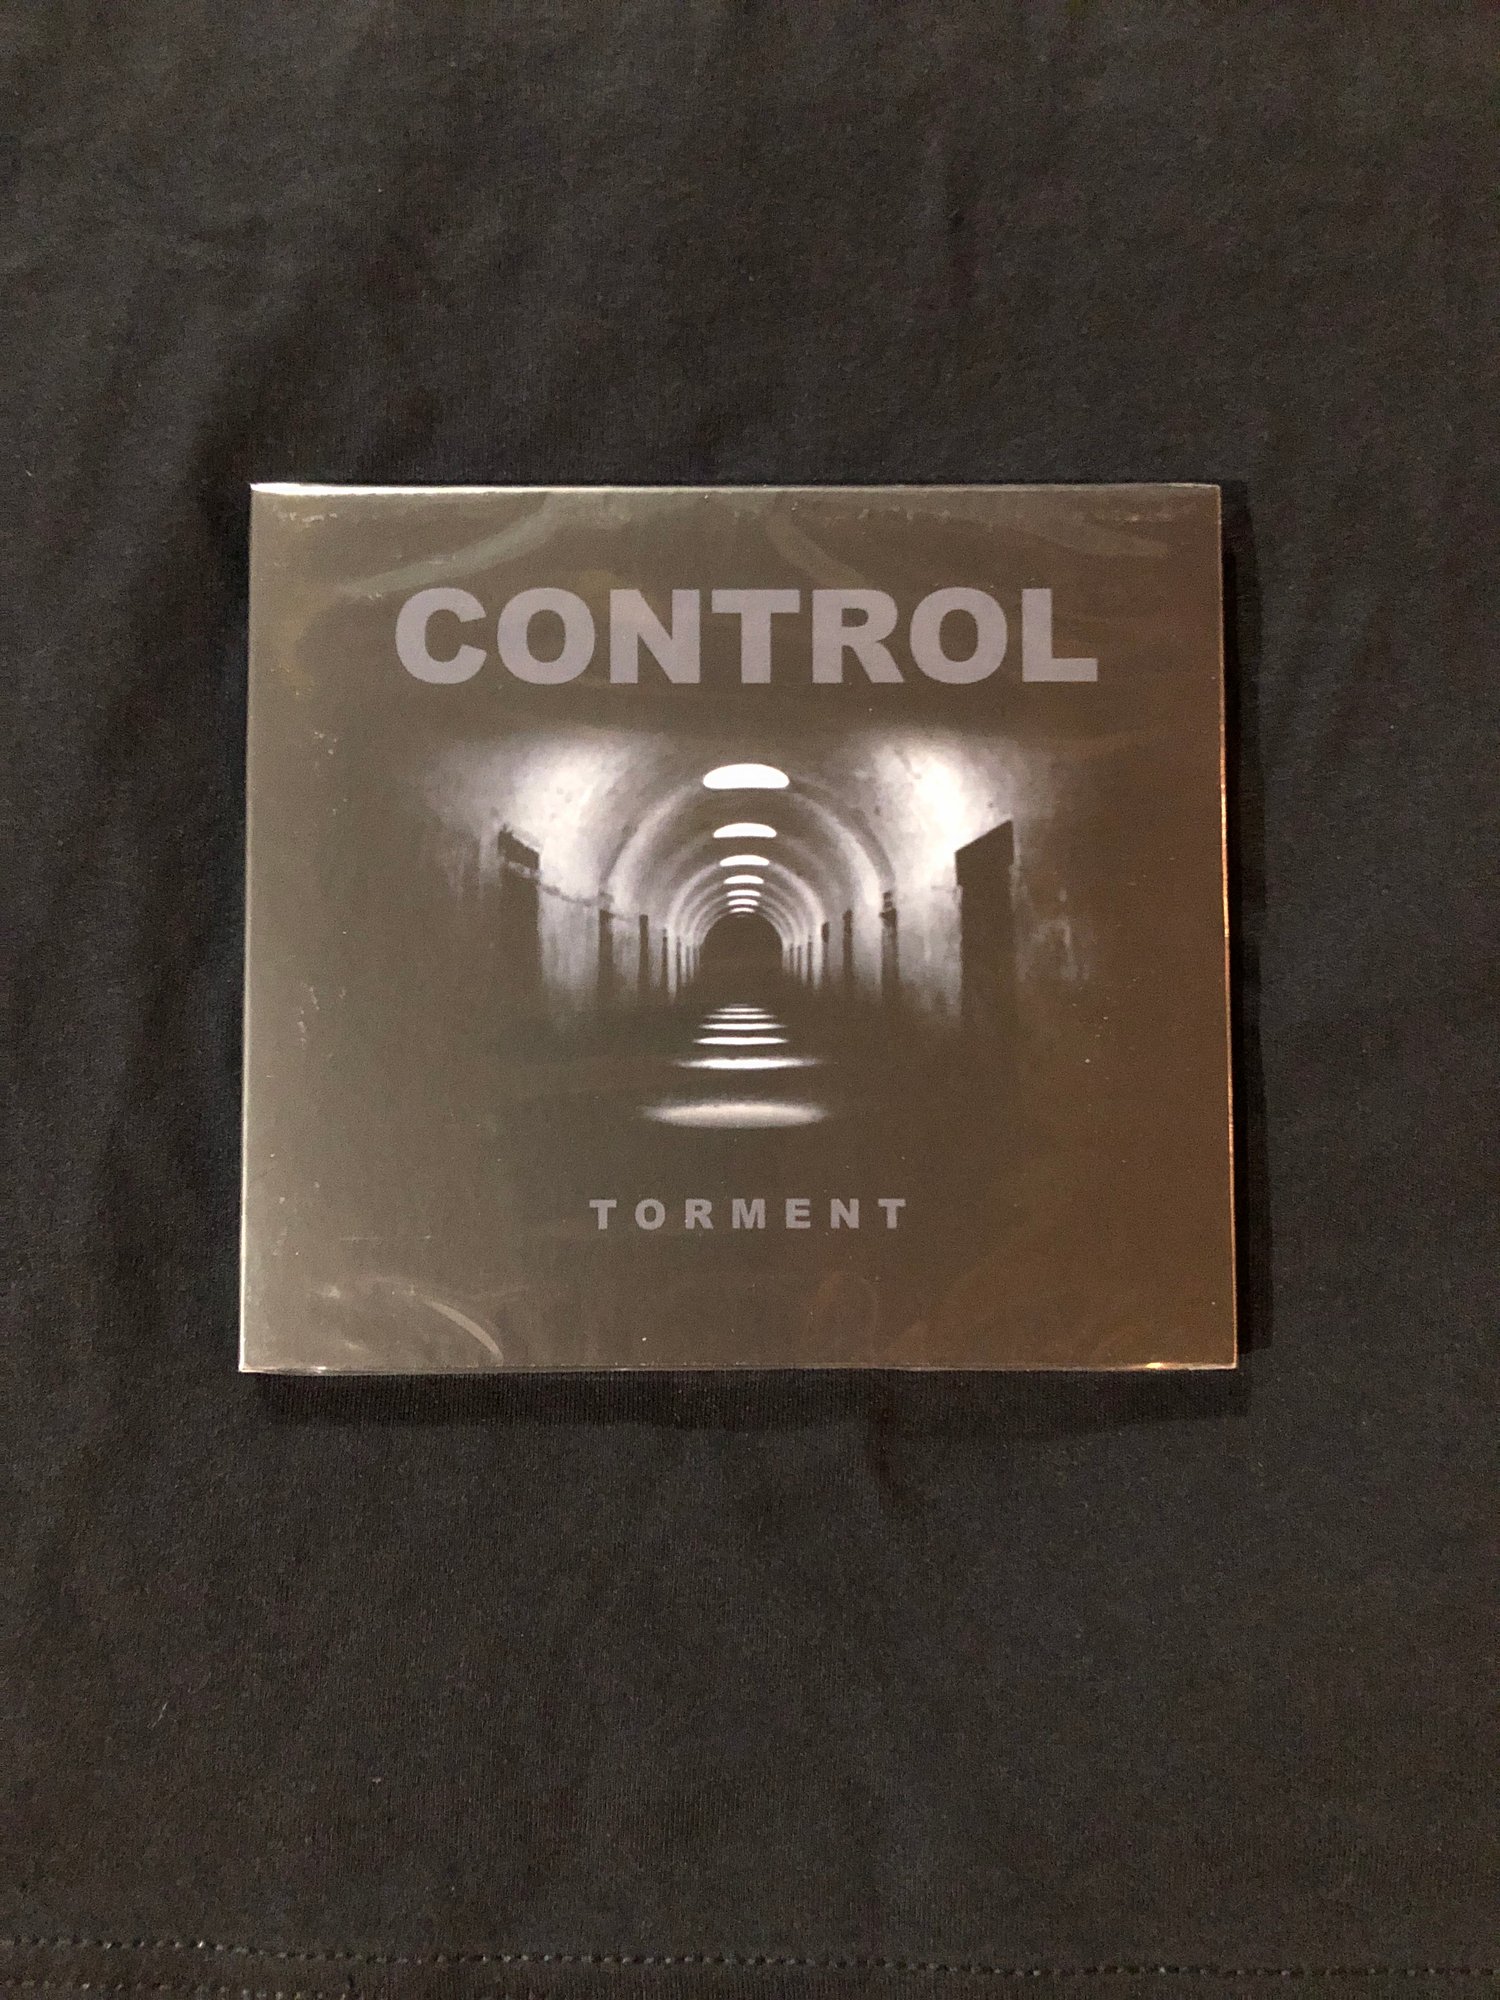 Control - Torment CD (CRUS-81)